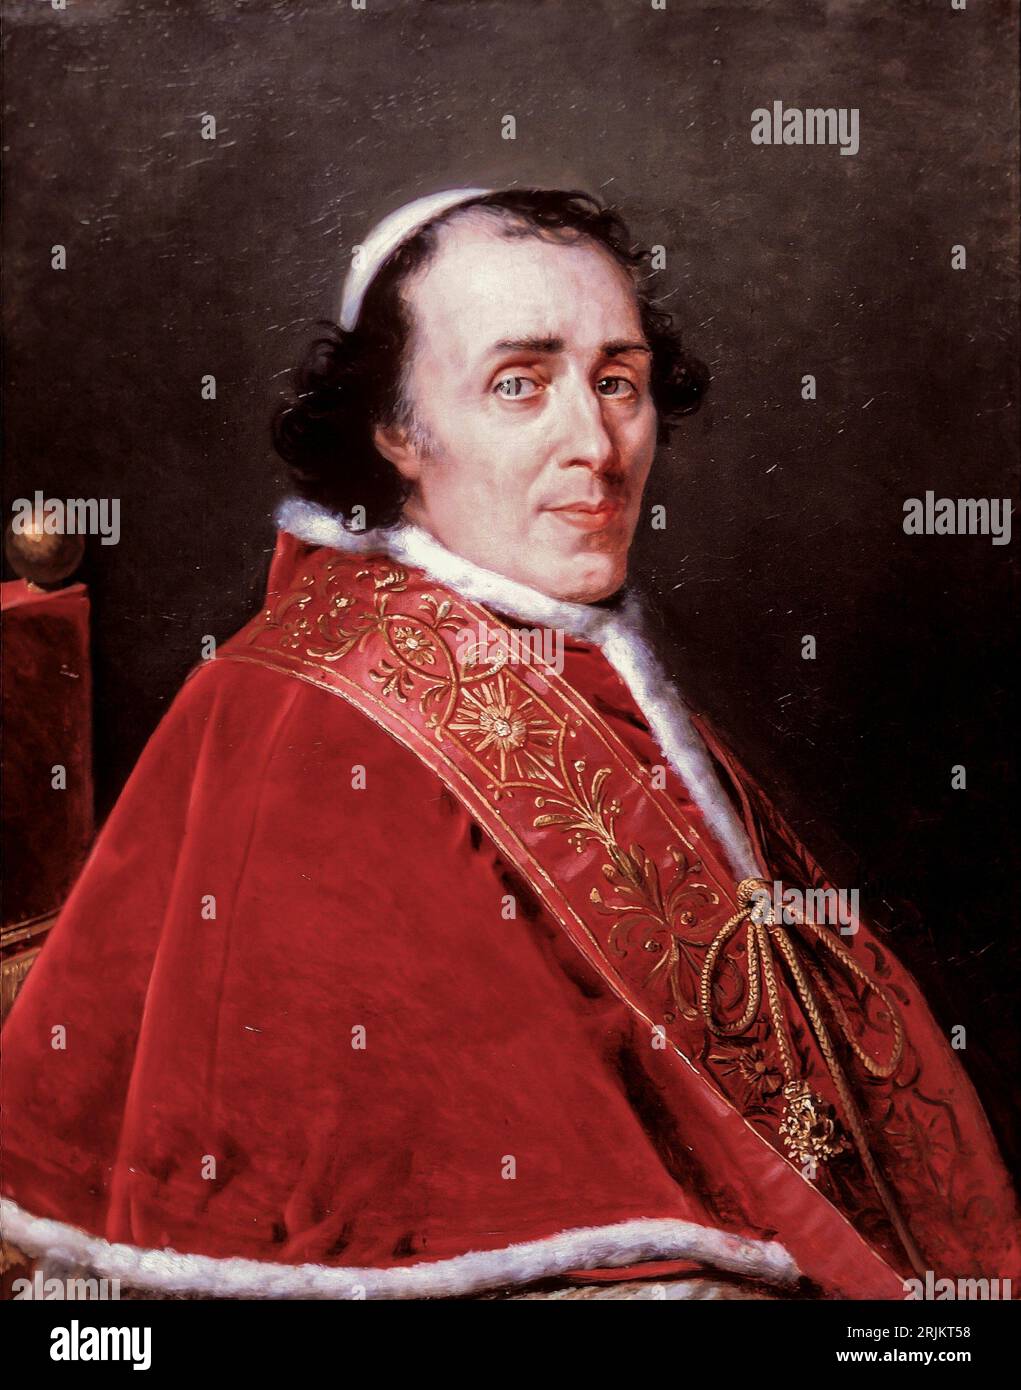 Ritratto di Papa Pio VII, 1805. Robert Jacques Francois Lefèvre, francese, 1755-1830. Papa Pio VII fu papa dal 1800 al 1823 ed è noto soprattutto per questo Foto Stock